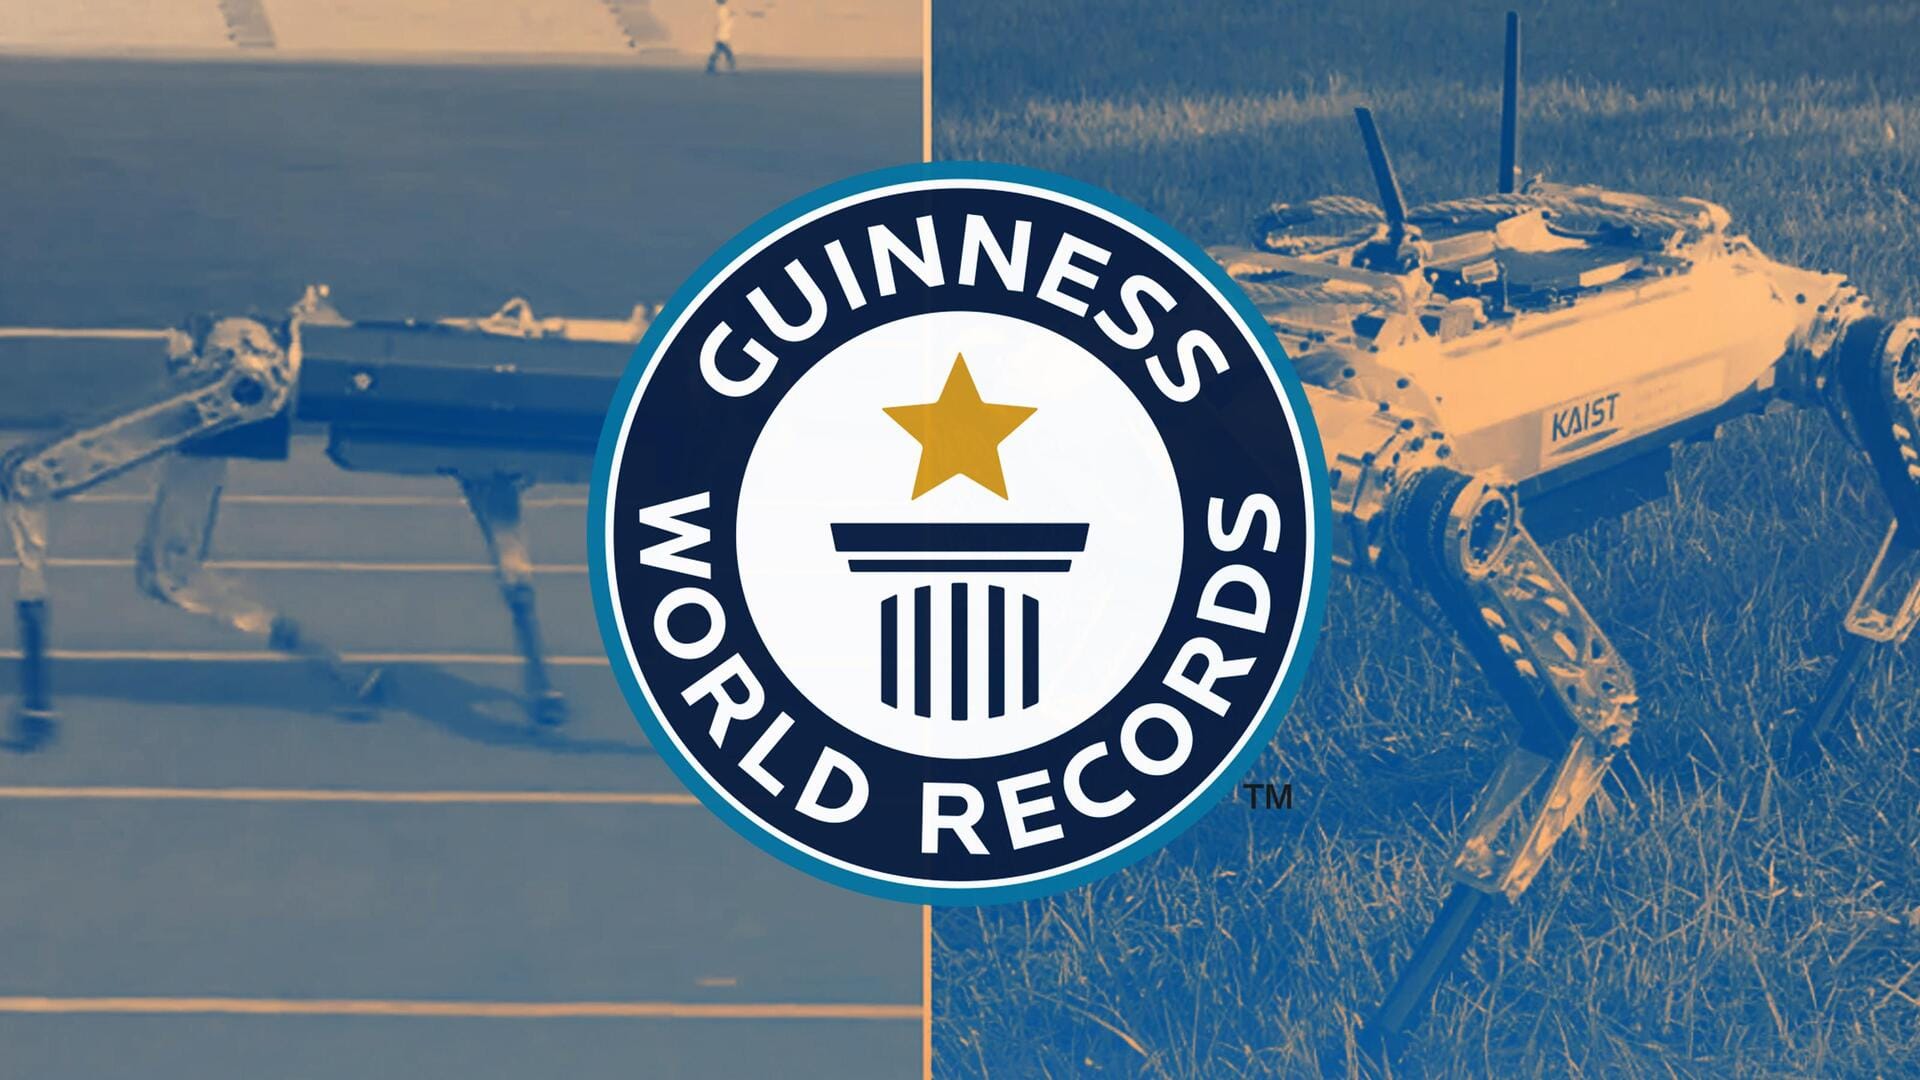 दक्षिण कोरिया: रोबोट ने 19.87 सेकंड में 100 मीटर तक दौड़कर बनाया विश्व रिकॉर्ड